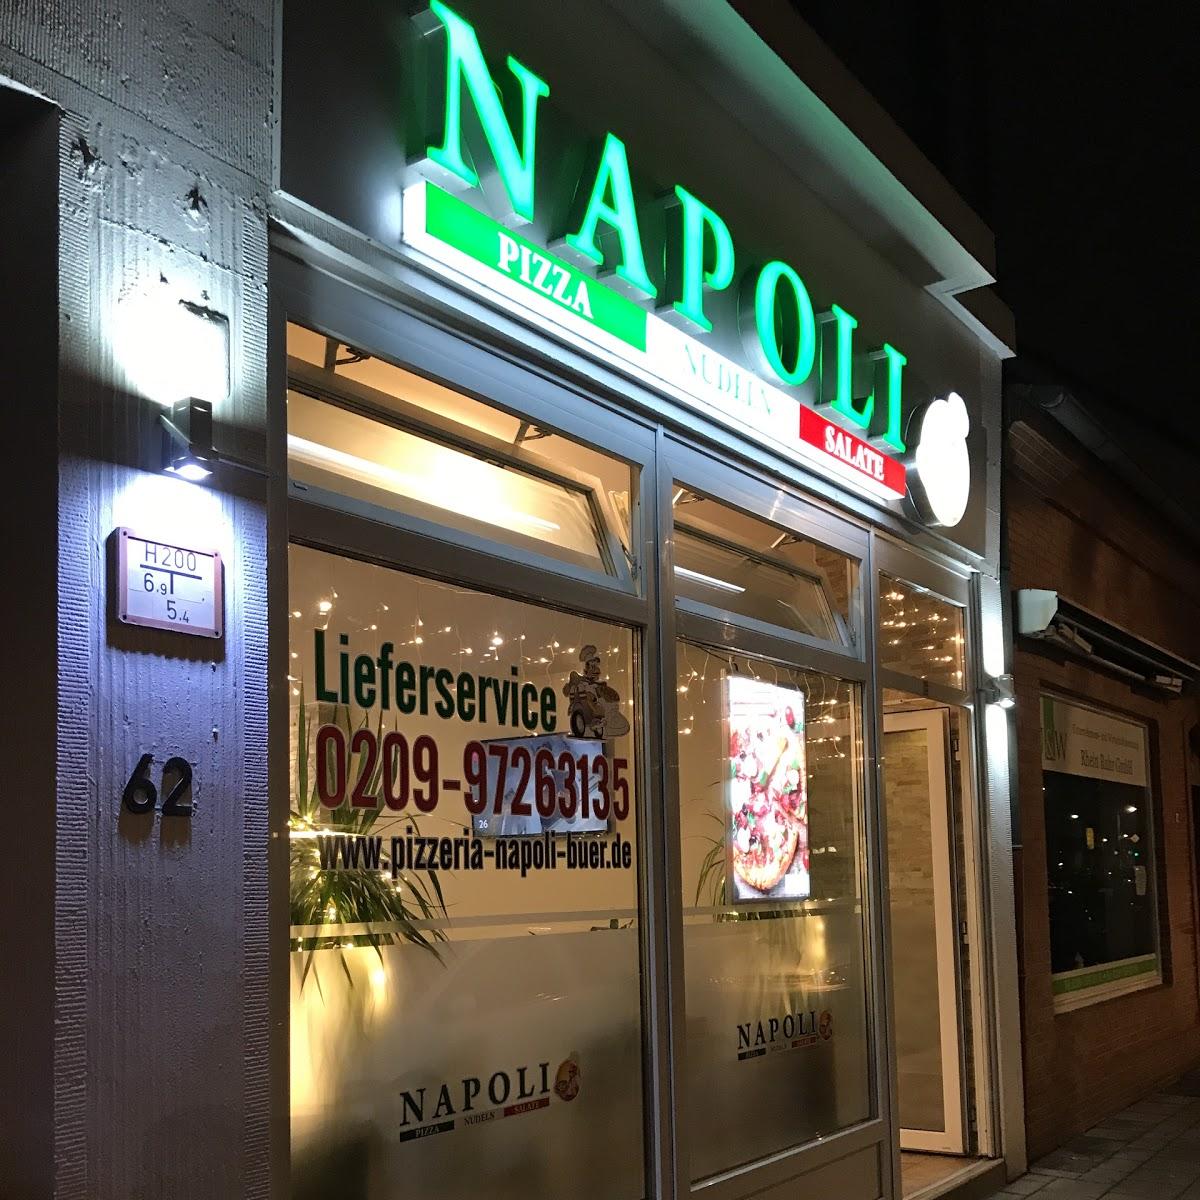 Restaurant "Pizzeria Napoli" in Gelsenkirchen